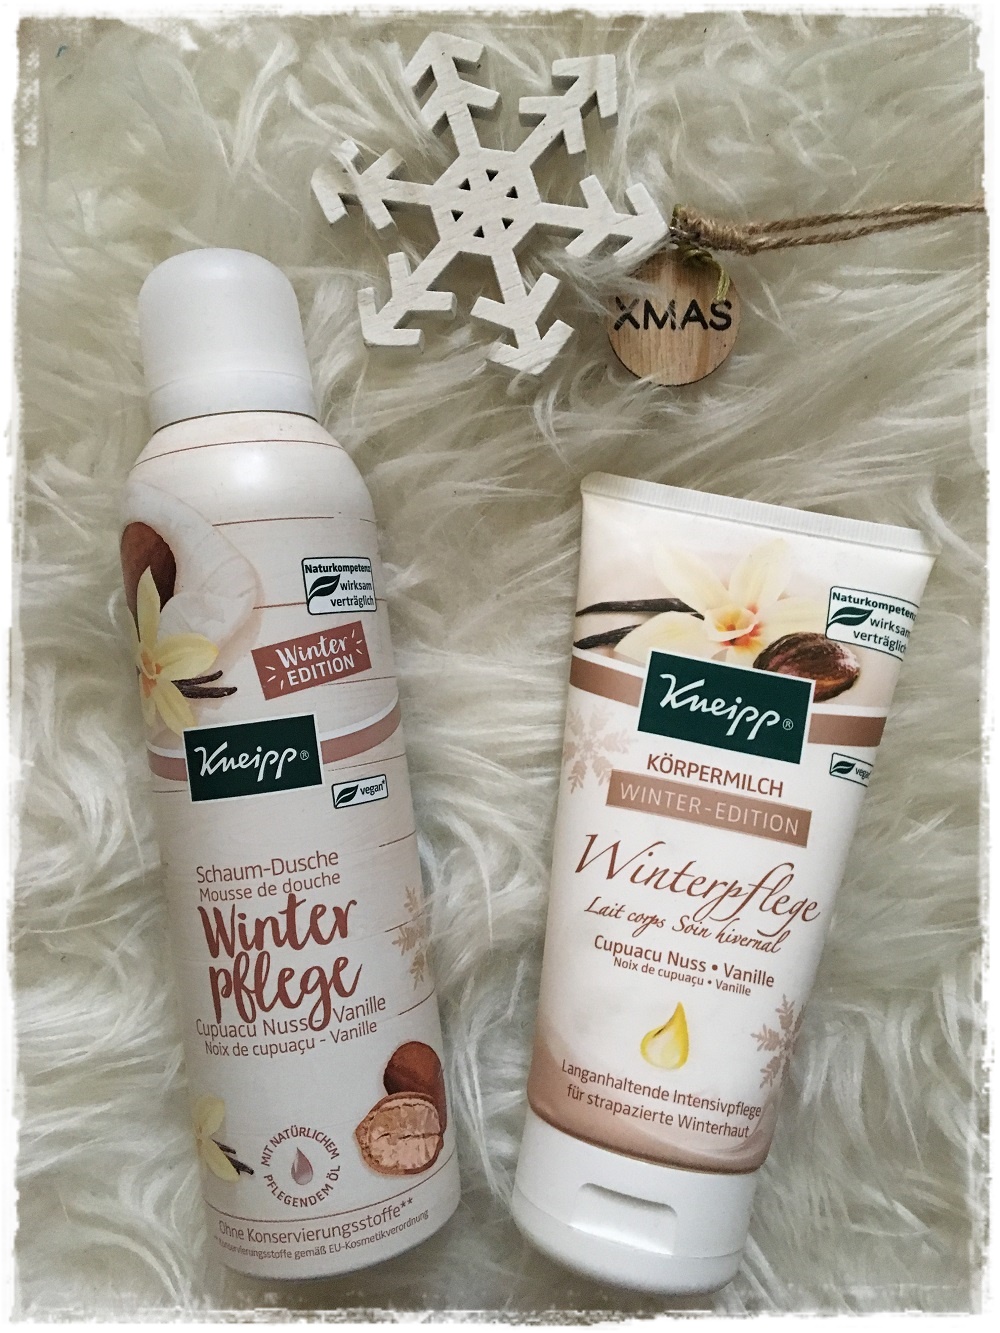 Winterpflege für streichelzarte Haut mit Kneipp Schaumdusche und Körpermilch